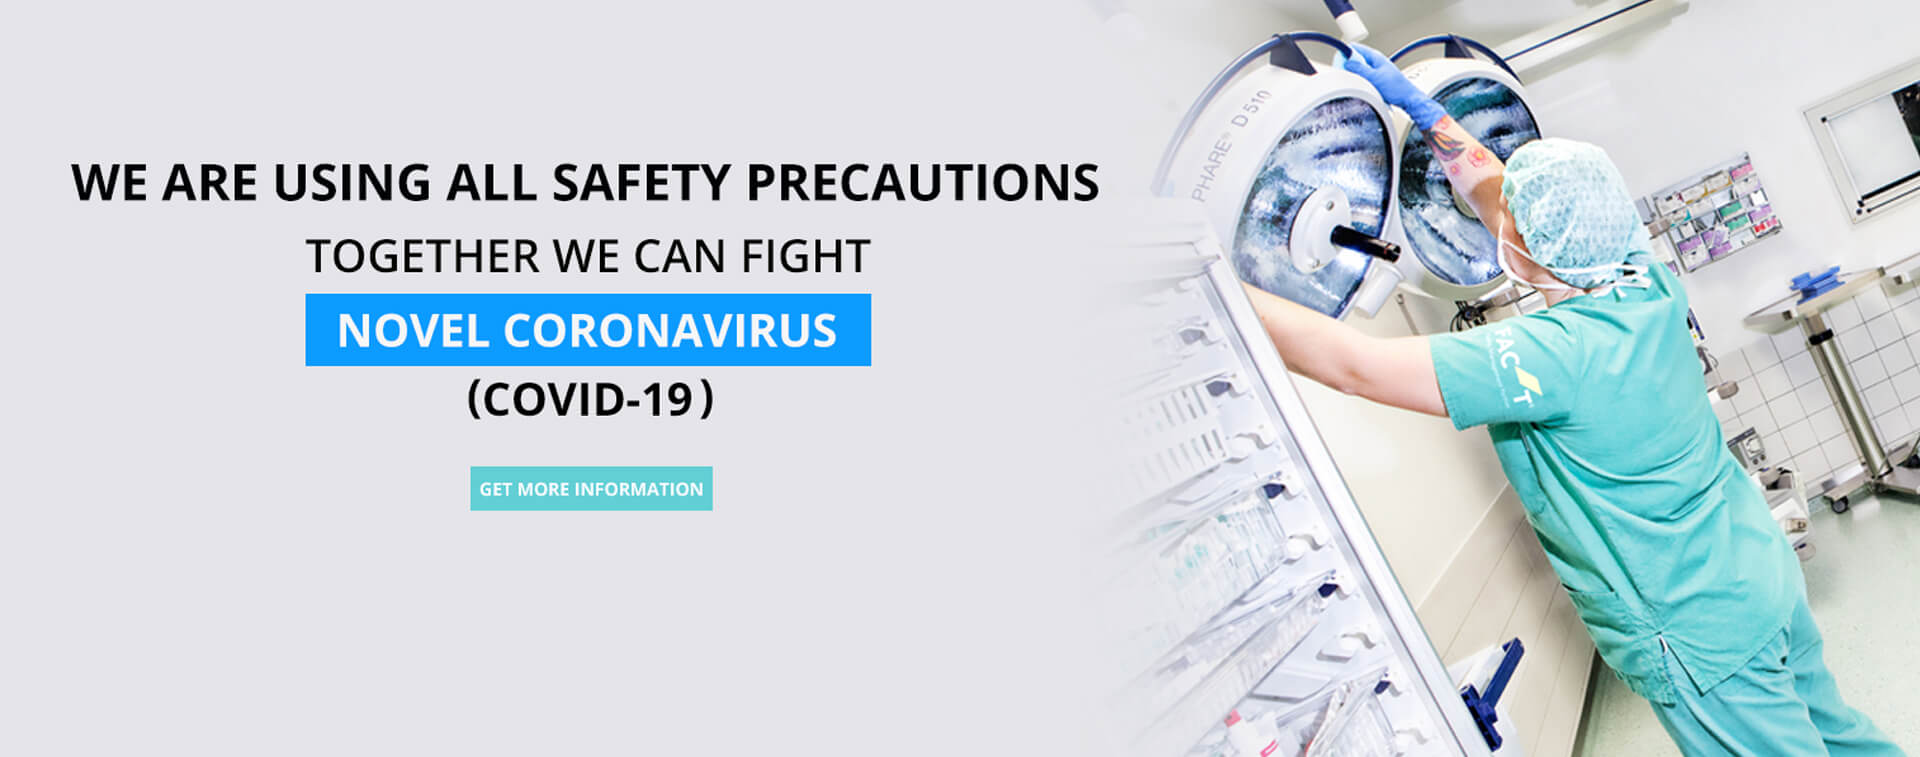 corona virus safety